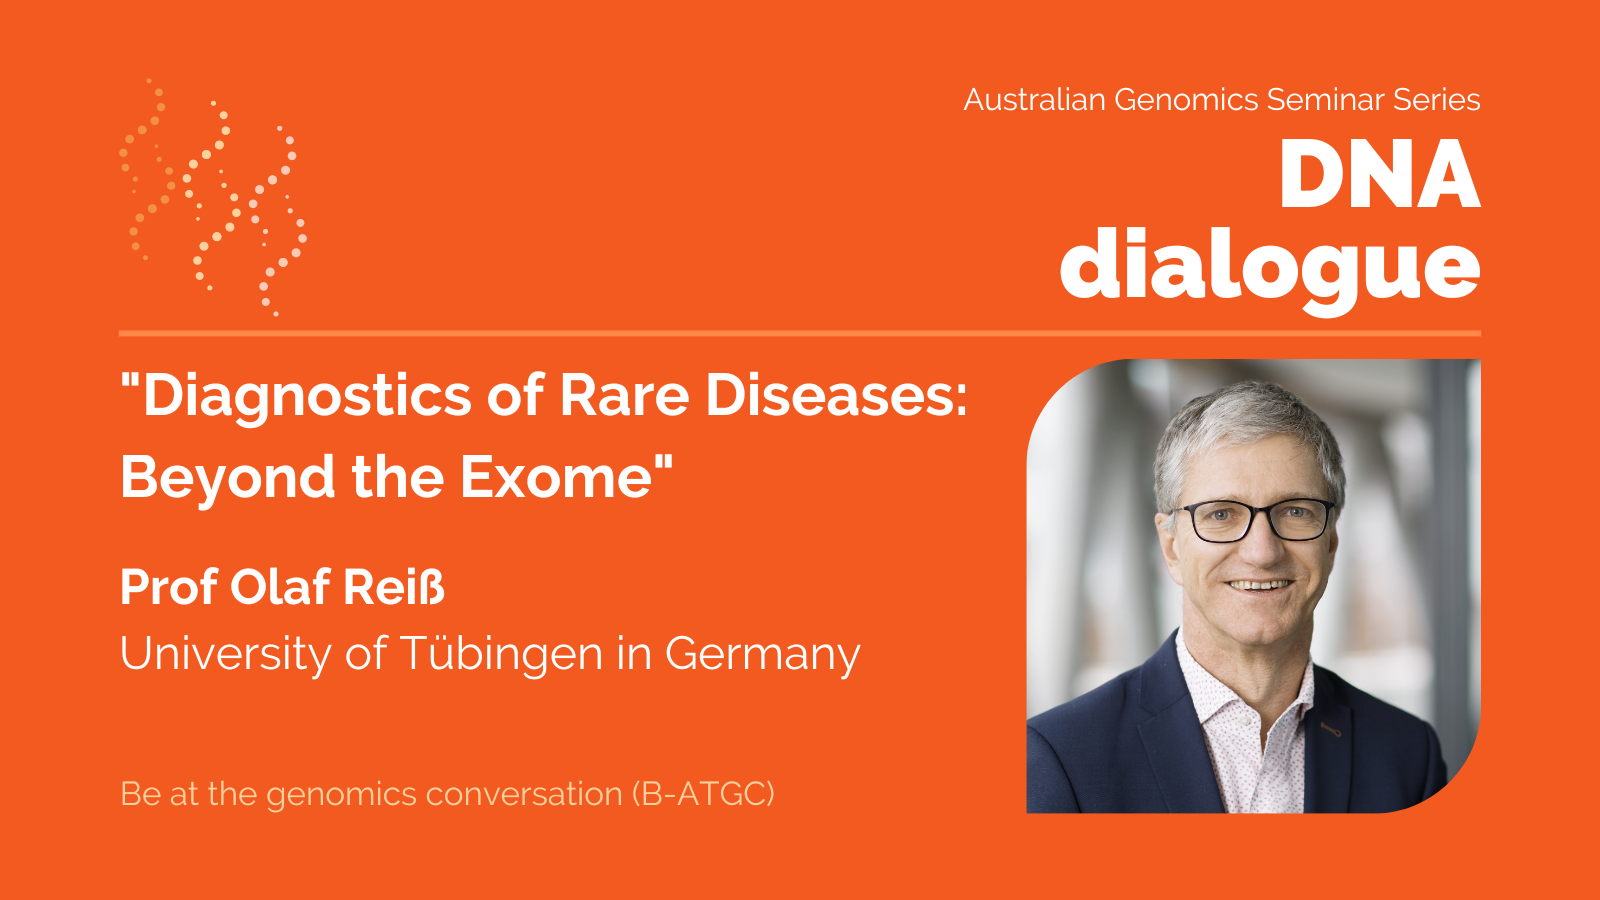 DNA dialogue seminar "Diagnostics of Rare Diseases: Beyond the Exome" on Thursday 29 June.